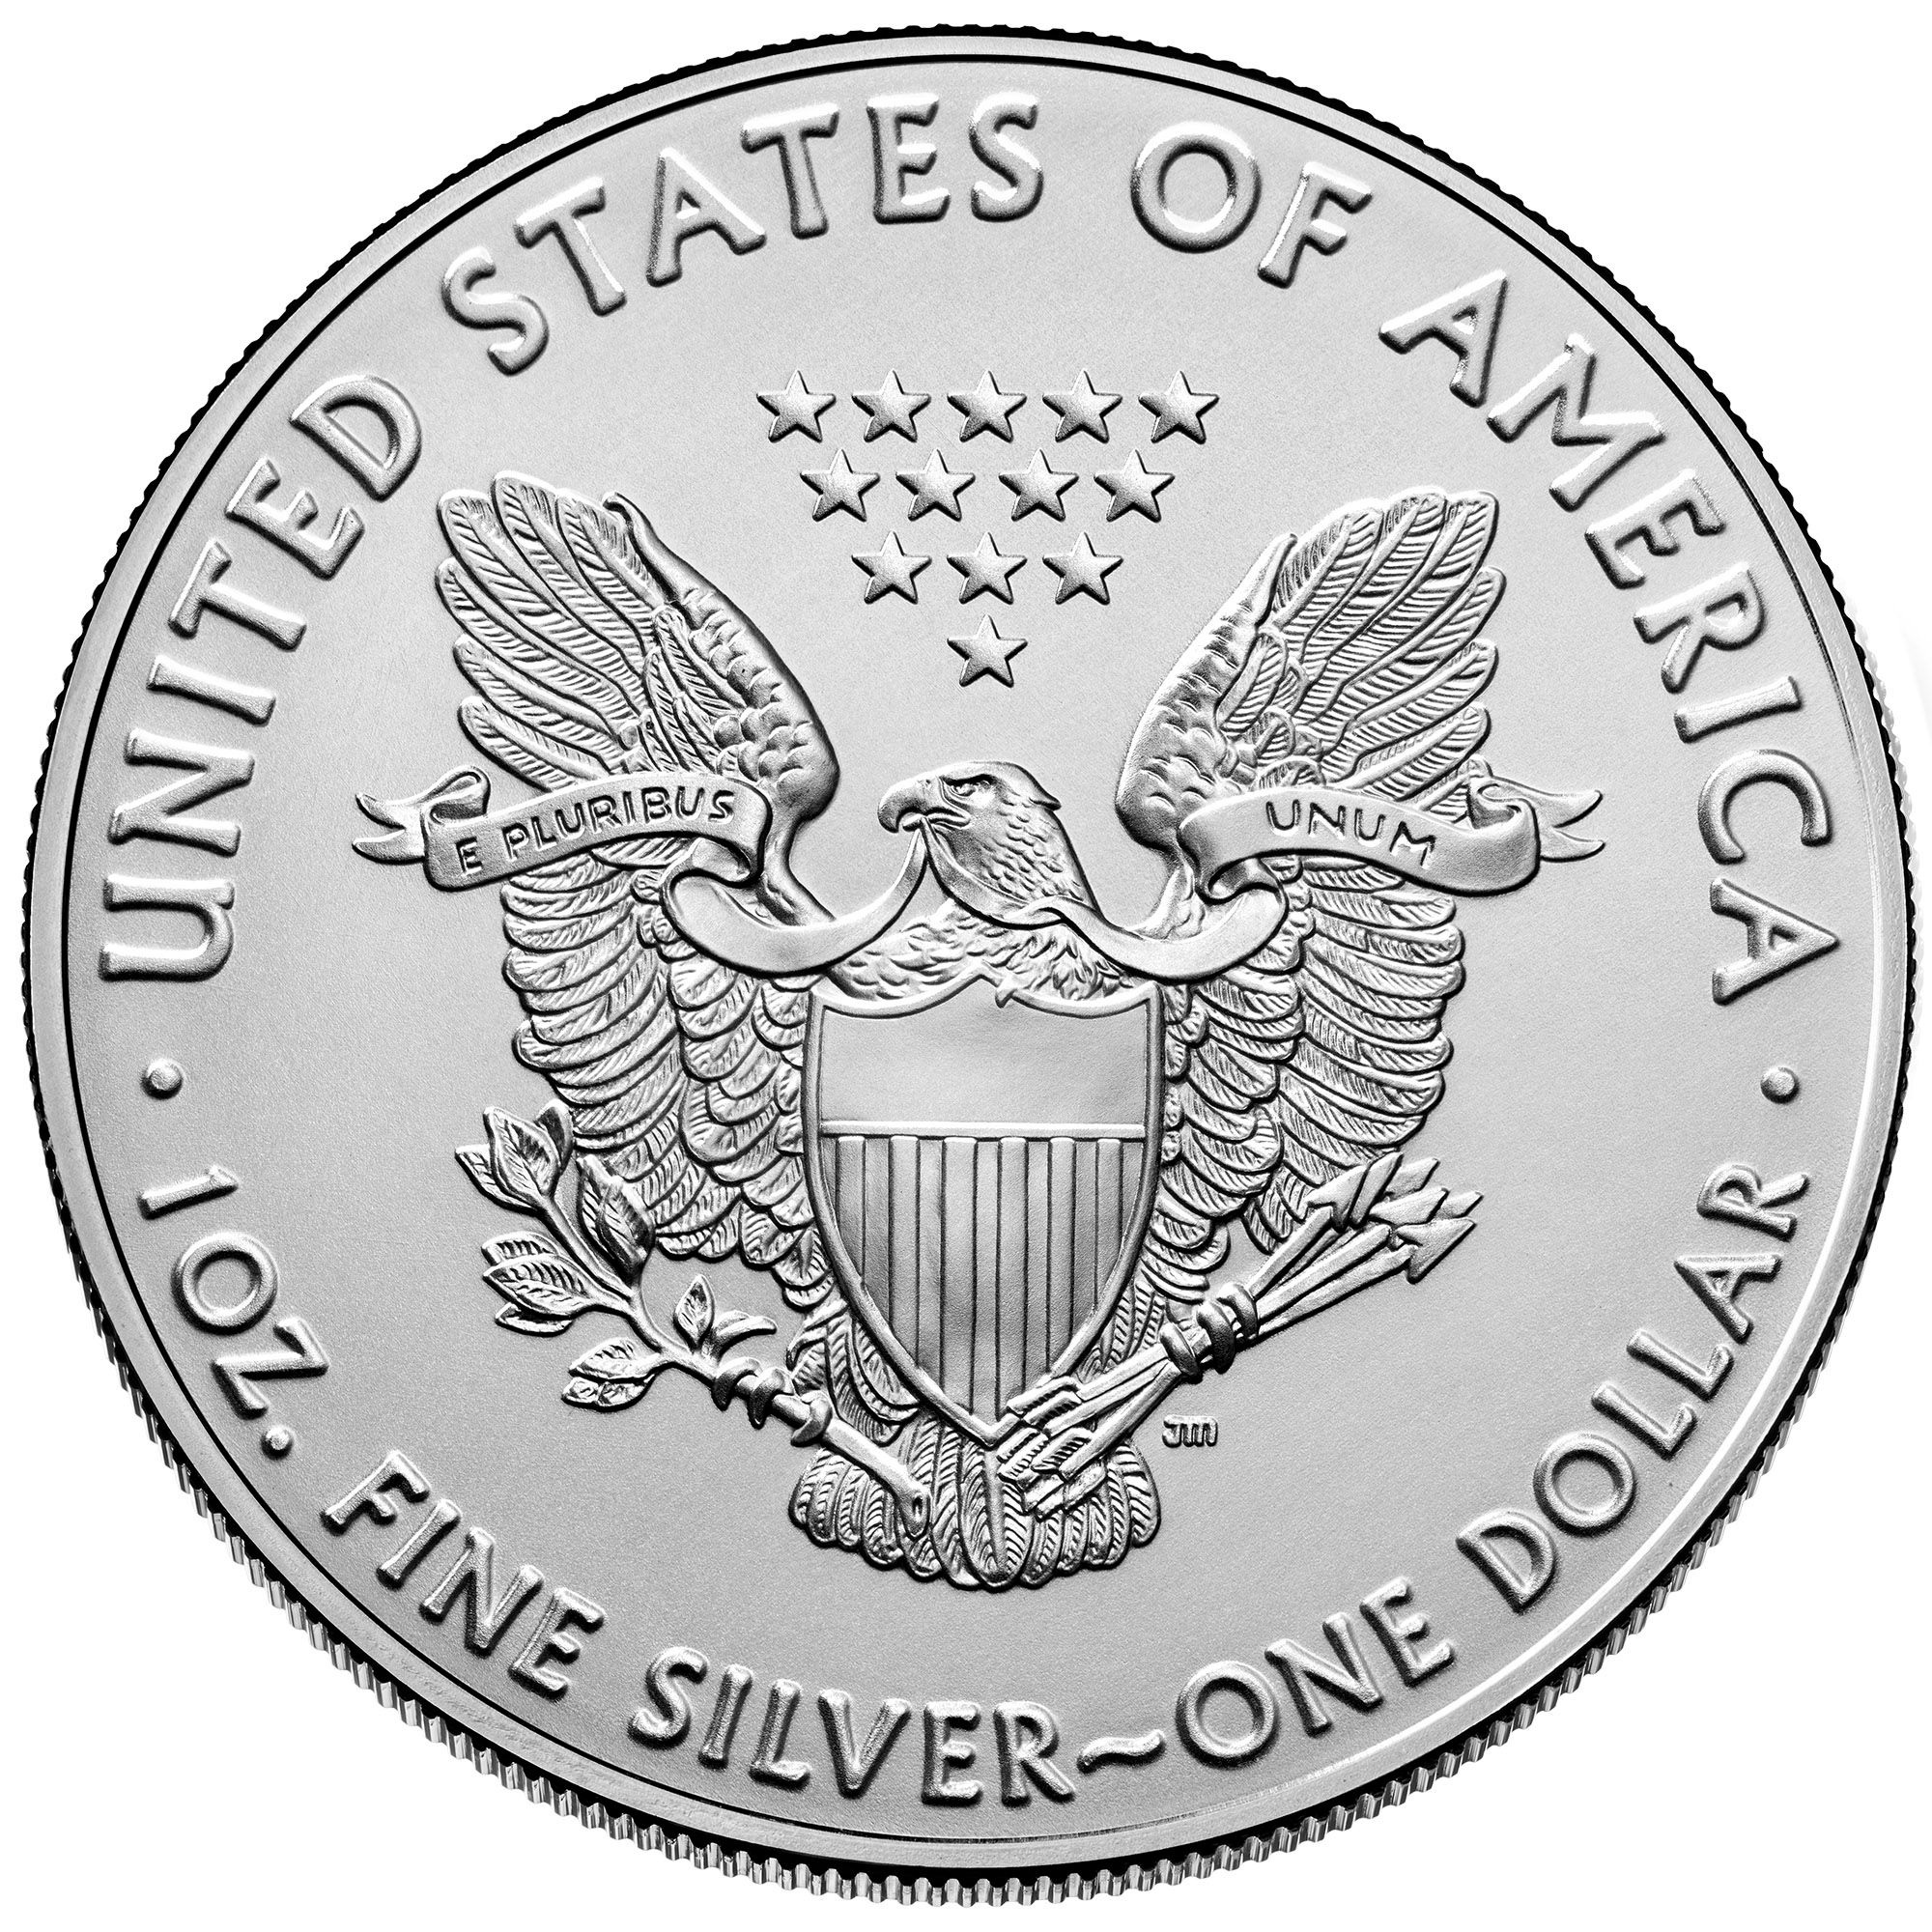 2021 1 American Silver Eagle Coin BU Type 1 CV Coins & Collectables